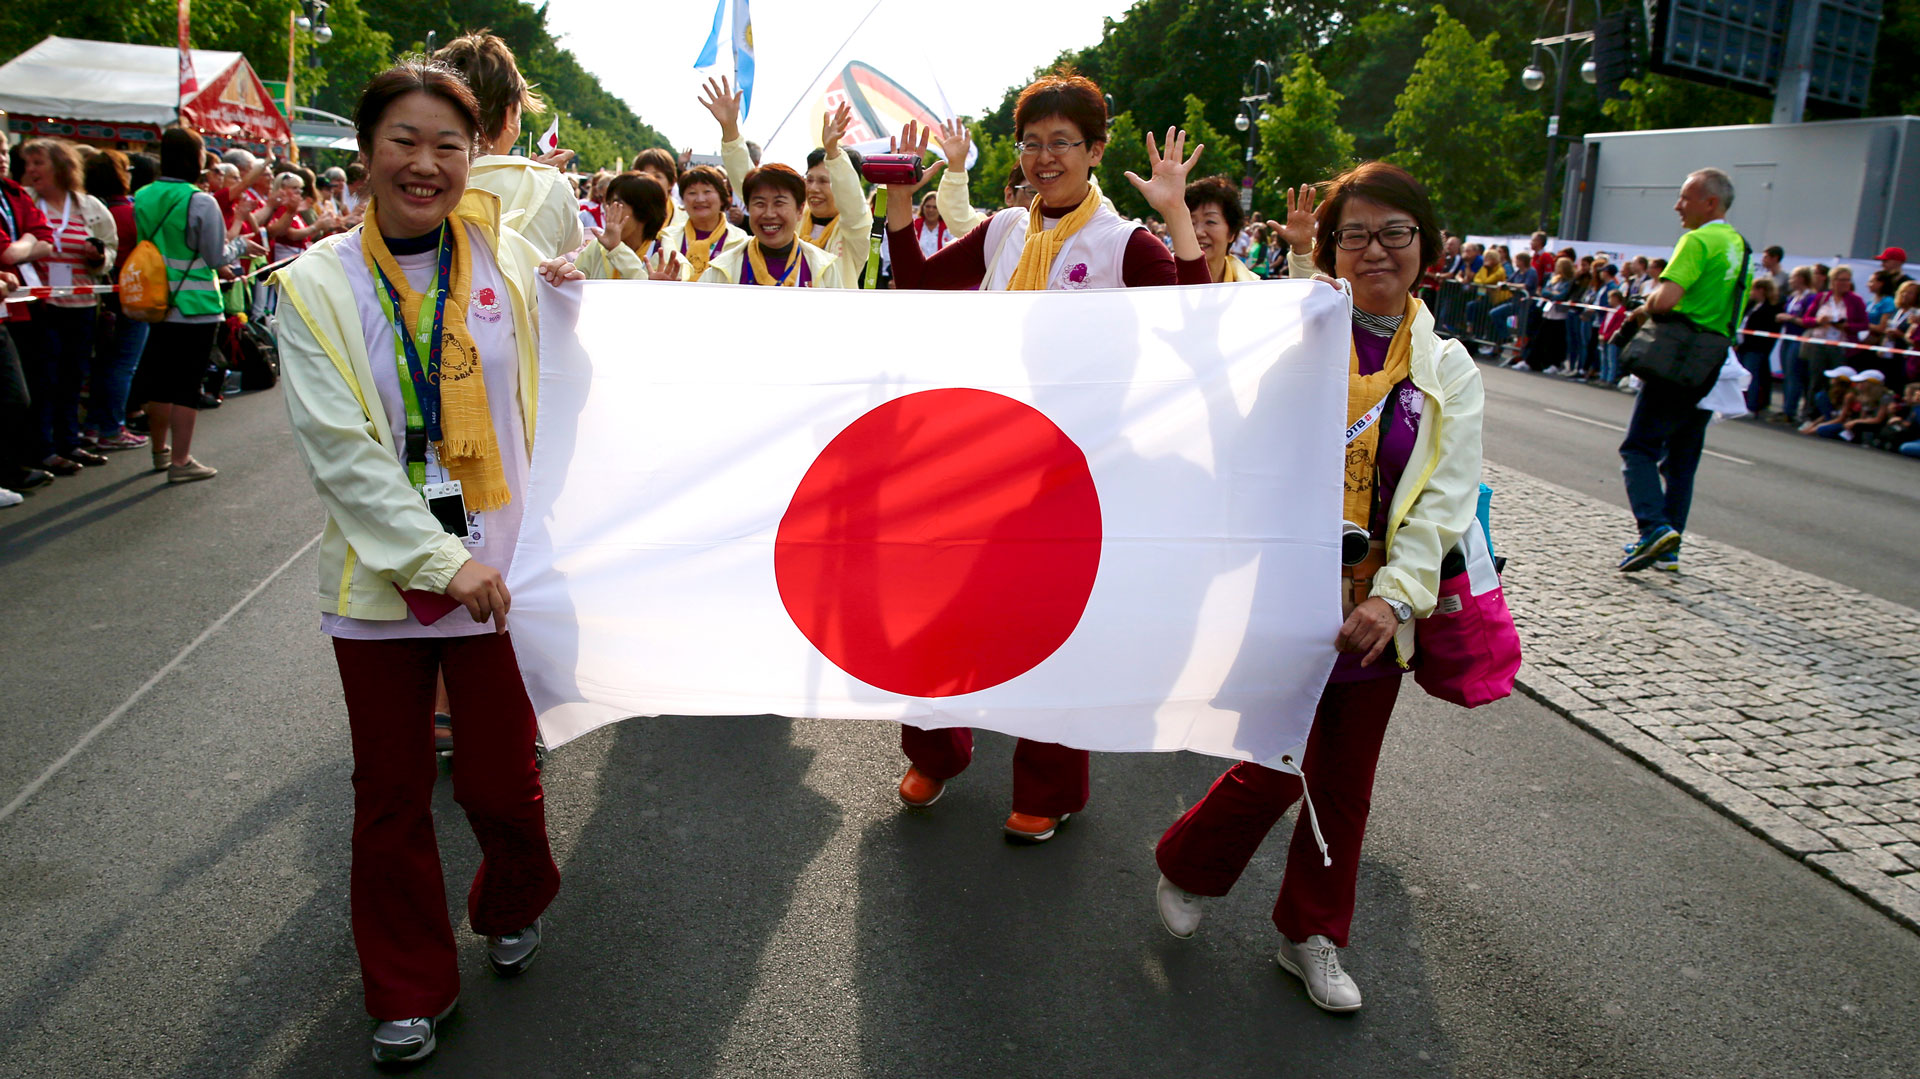 Japanische Gruppe beim Internationalen Deutschen Turnfest | Bildquelle: Turnfestfotos